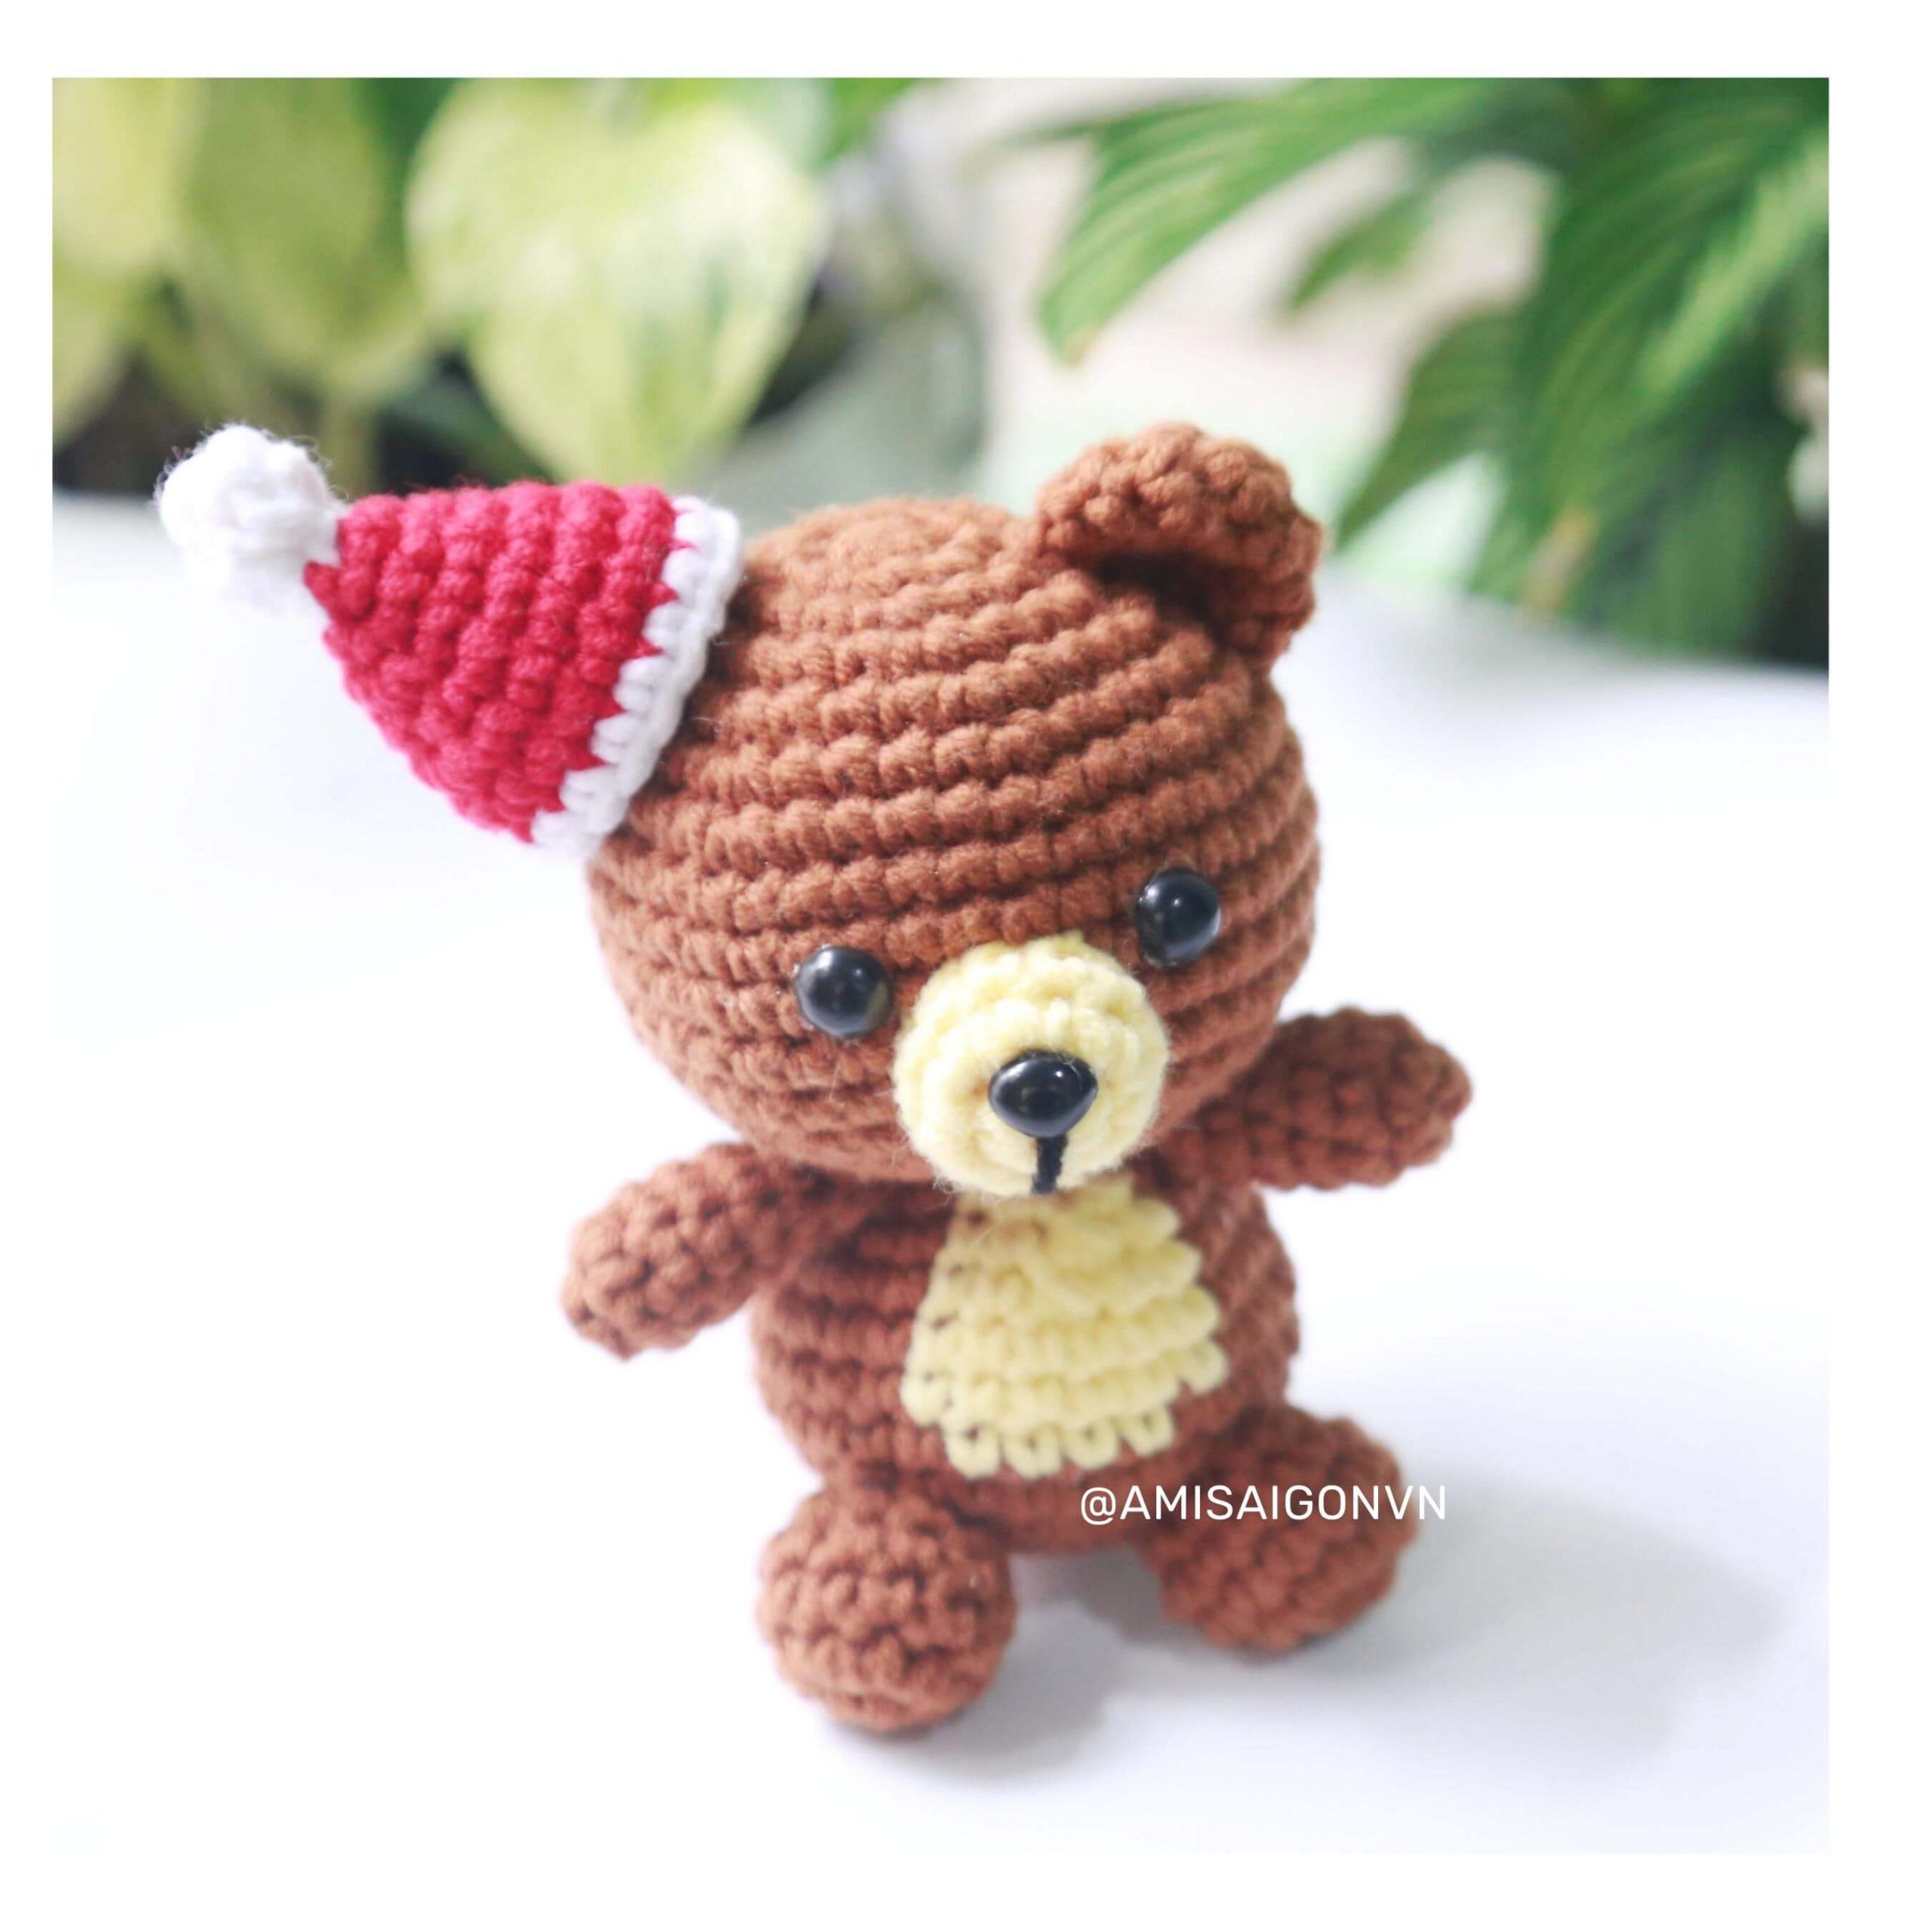 teddy-bear-amigurumi-crochet-pattern-by-amisaigo (10)